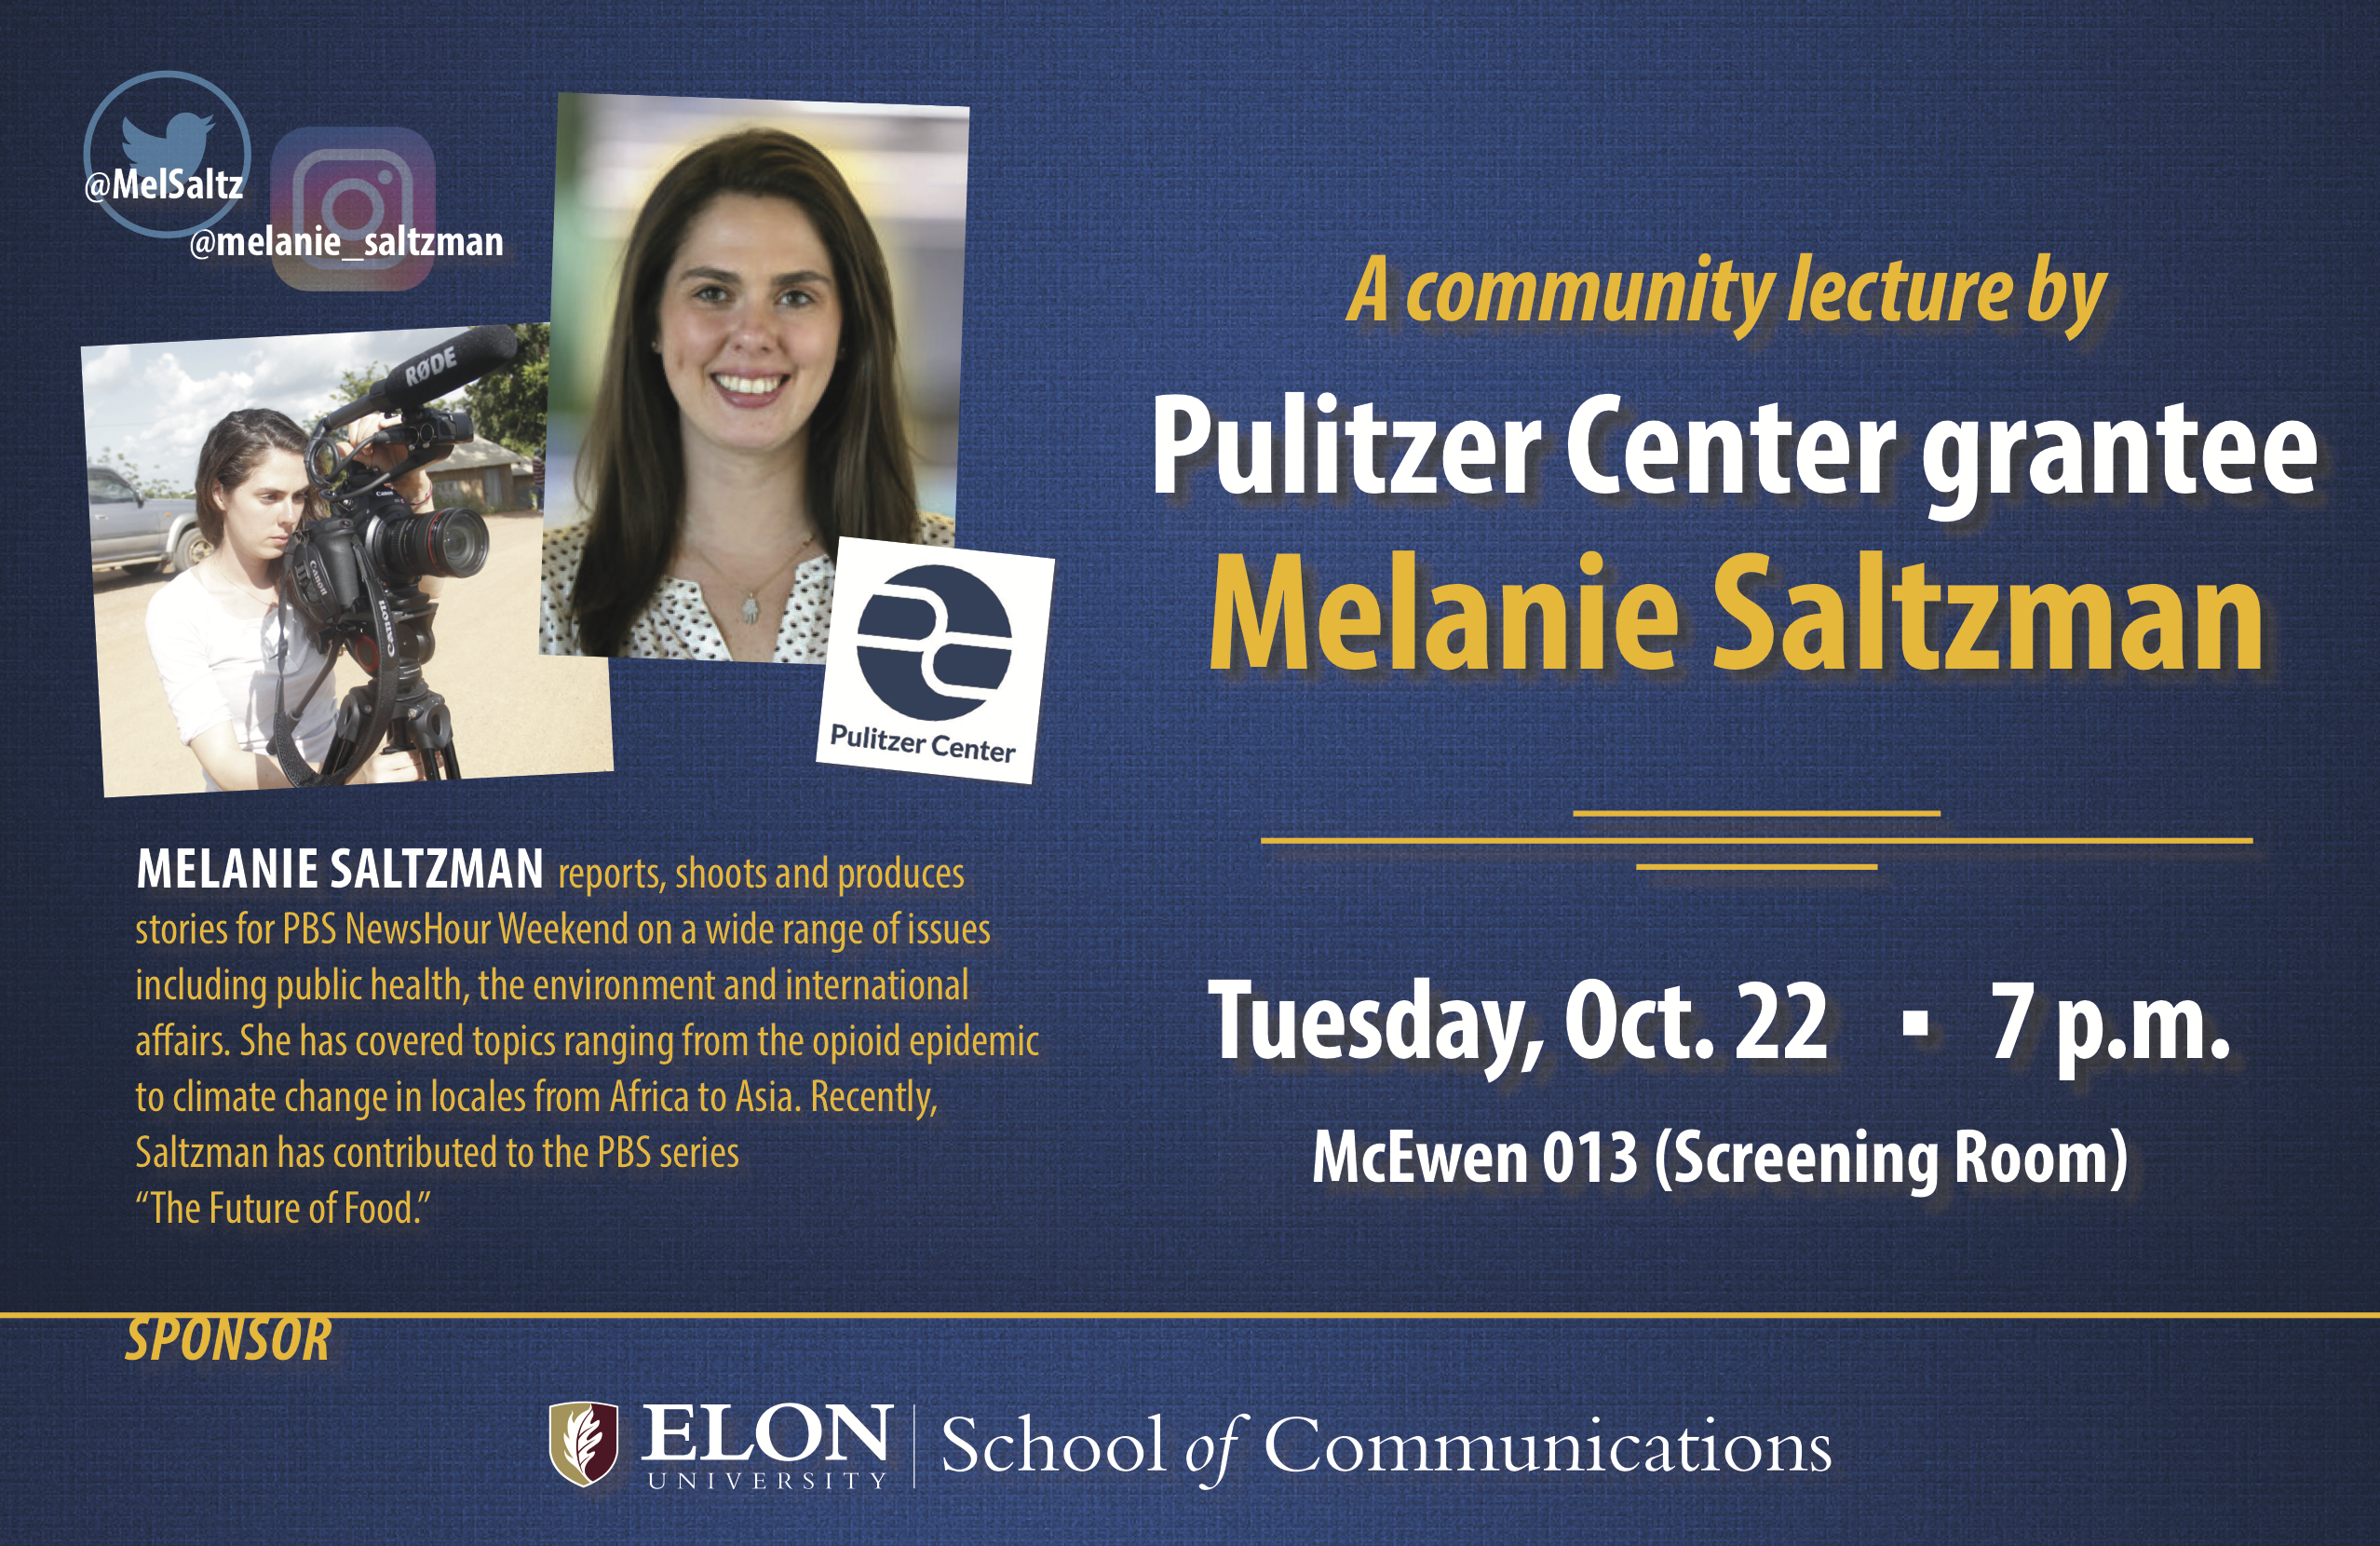 Melanie Saltzman at Elon University on October 21 and October 22.